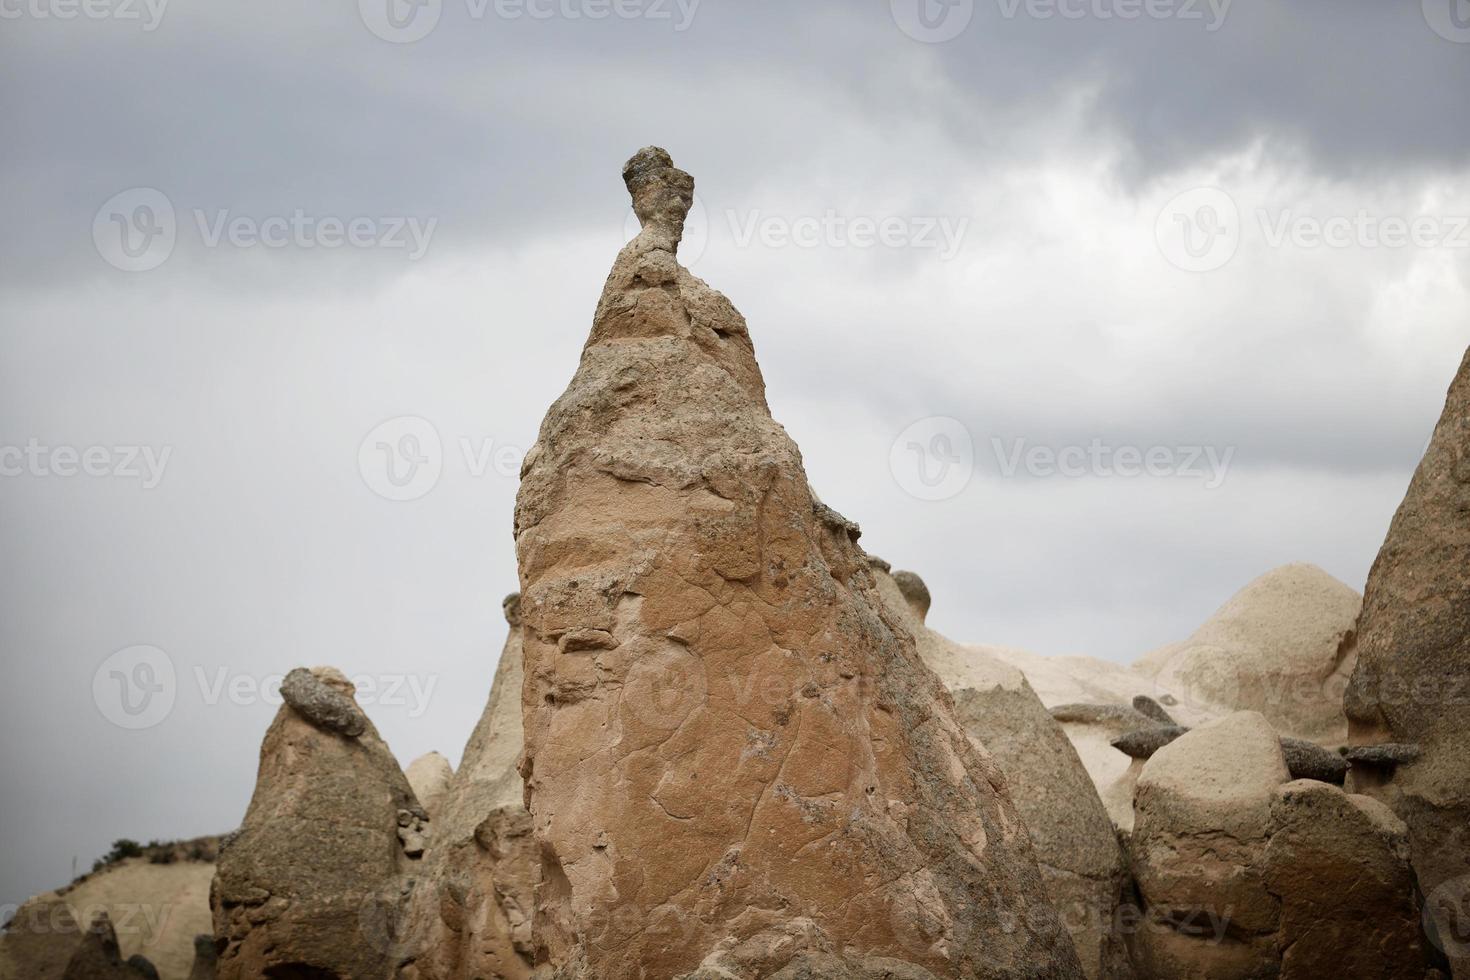 camini delle fate in cappadocia, turchia, paesaggio dei camini delle fate foto